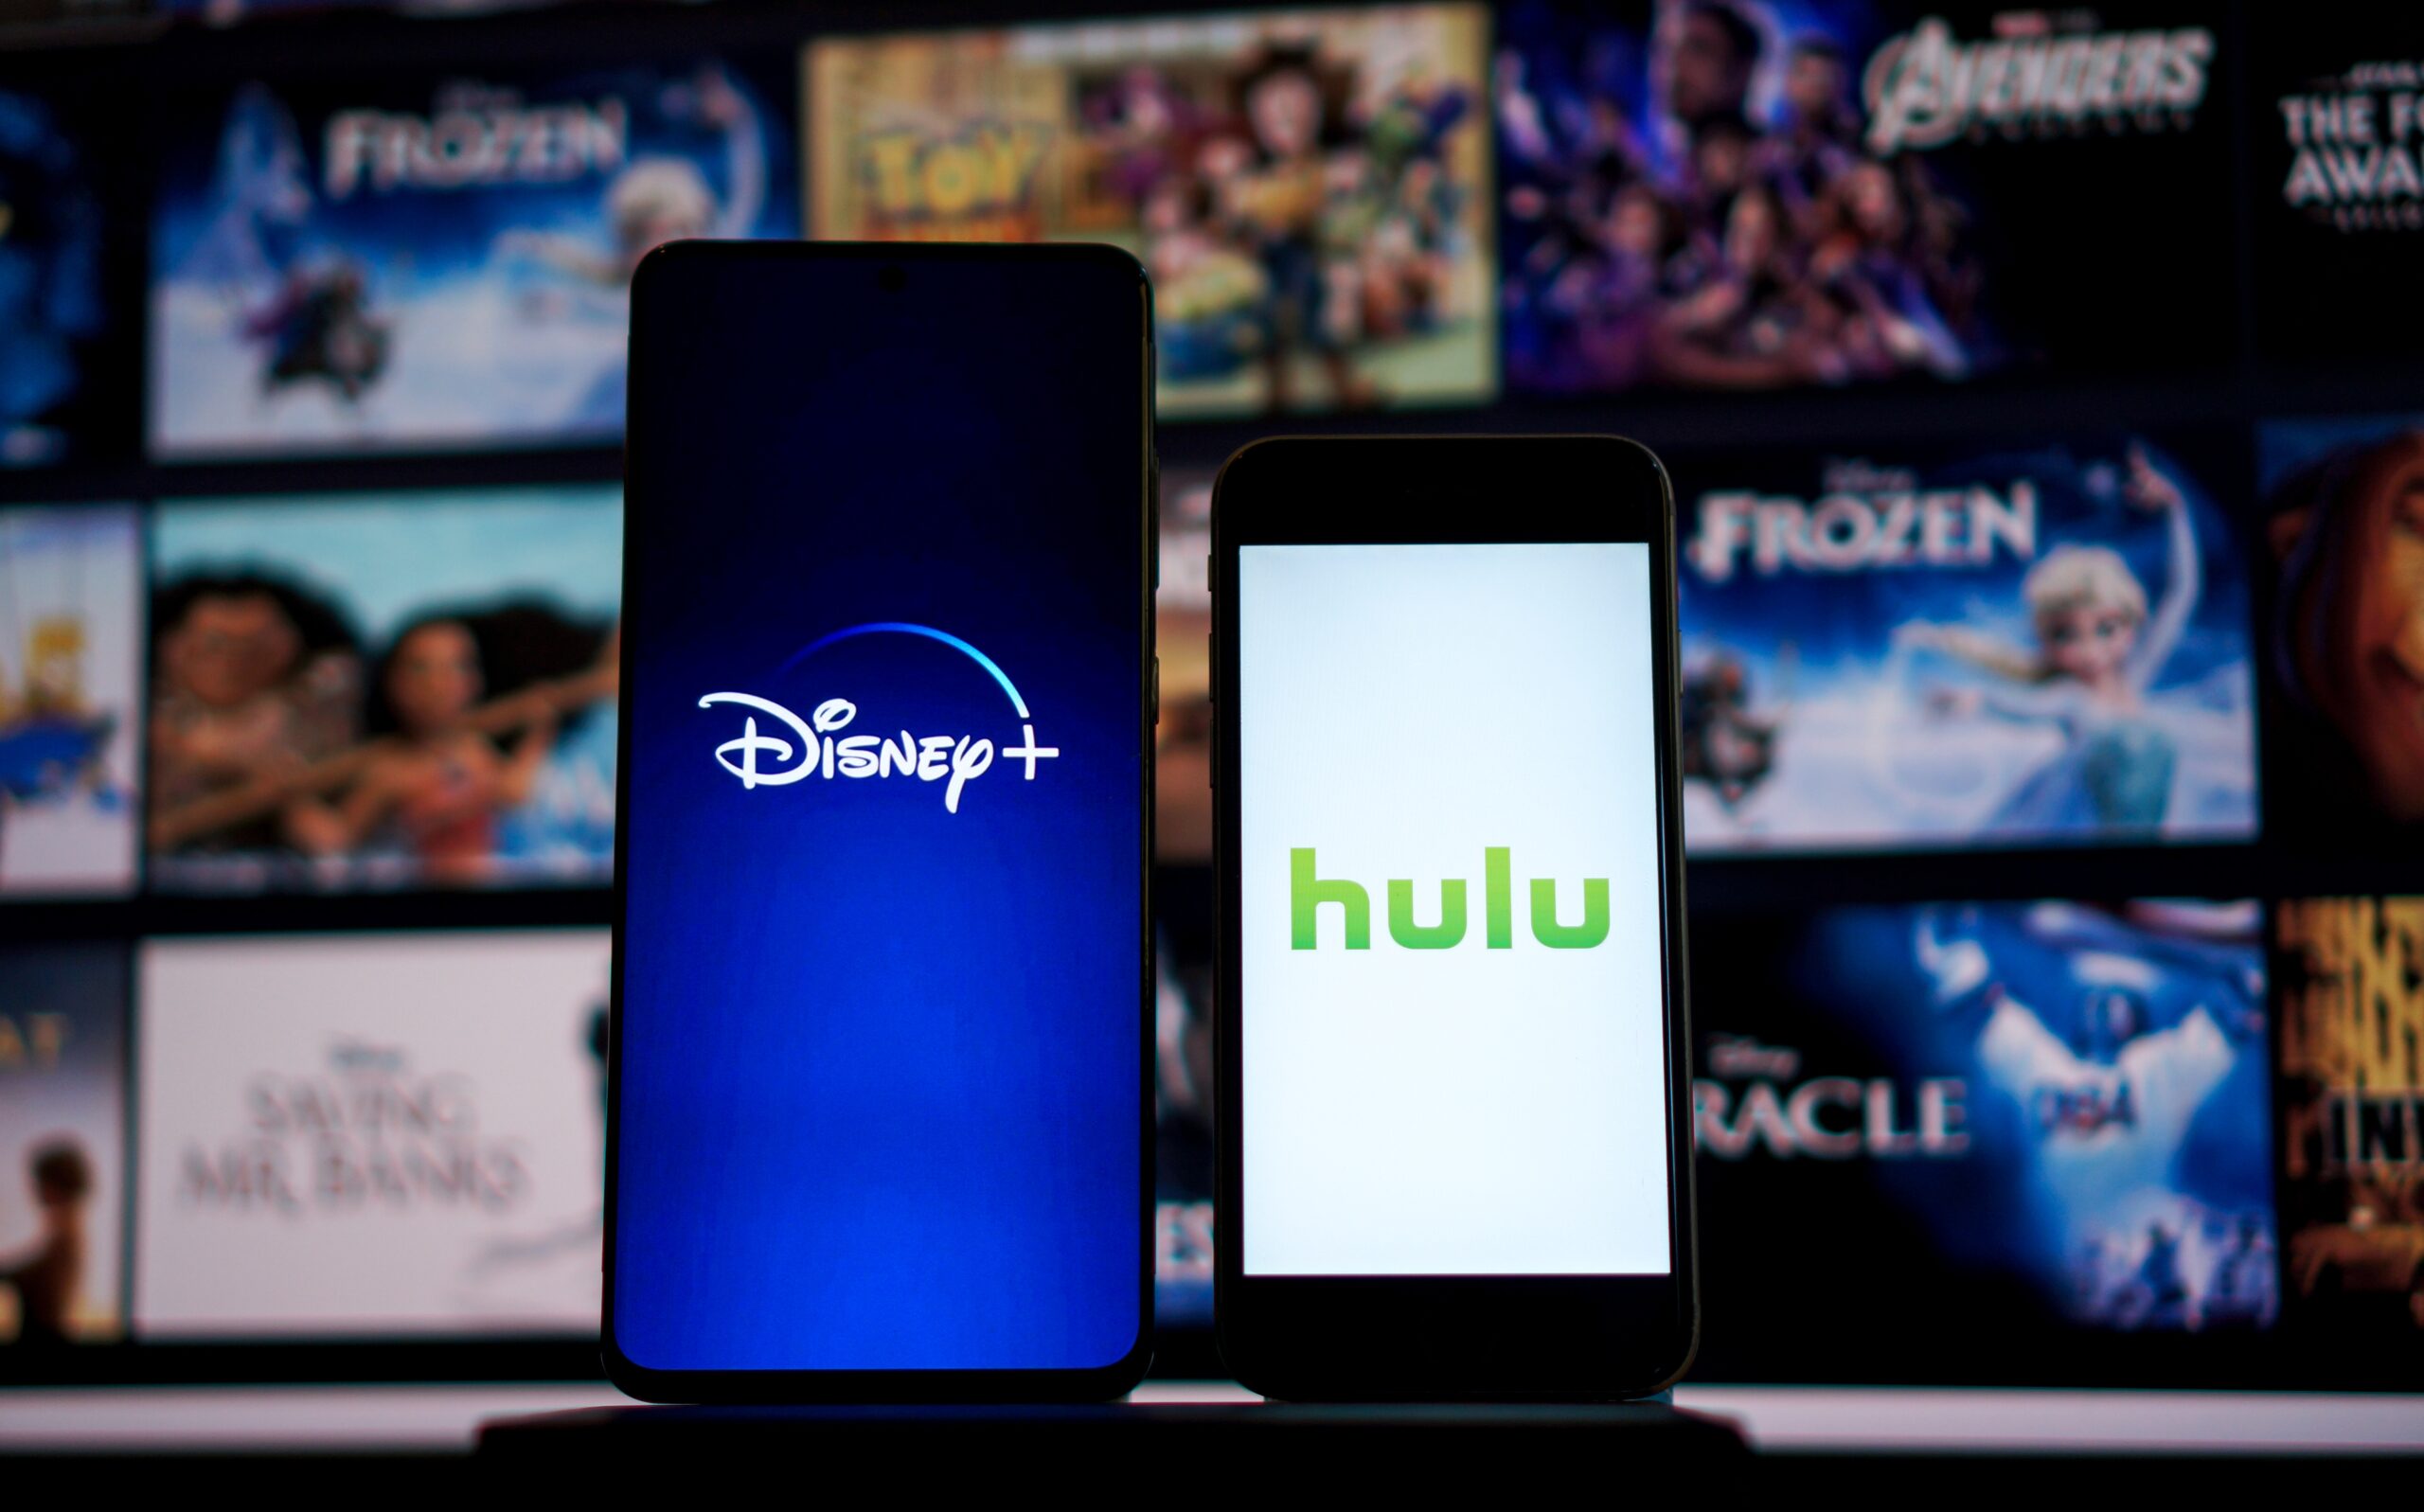 Imagem mostra dois smartphones, mostrando em suas telas as logomarcas da Disney e do Hulu